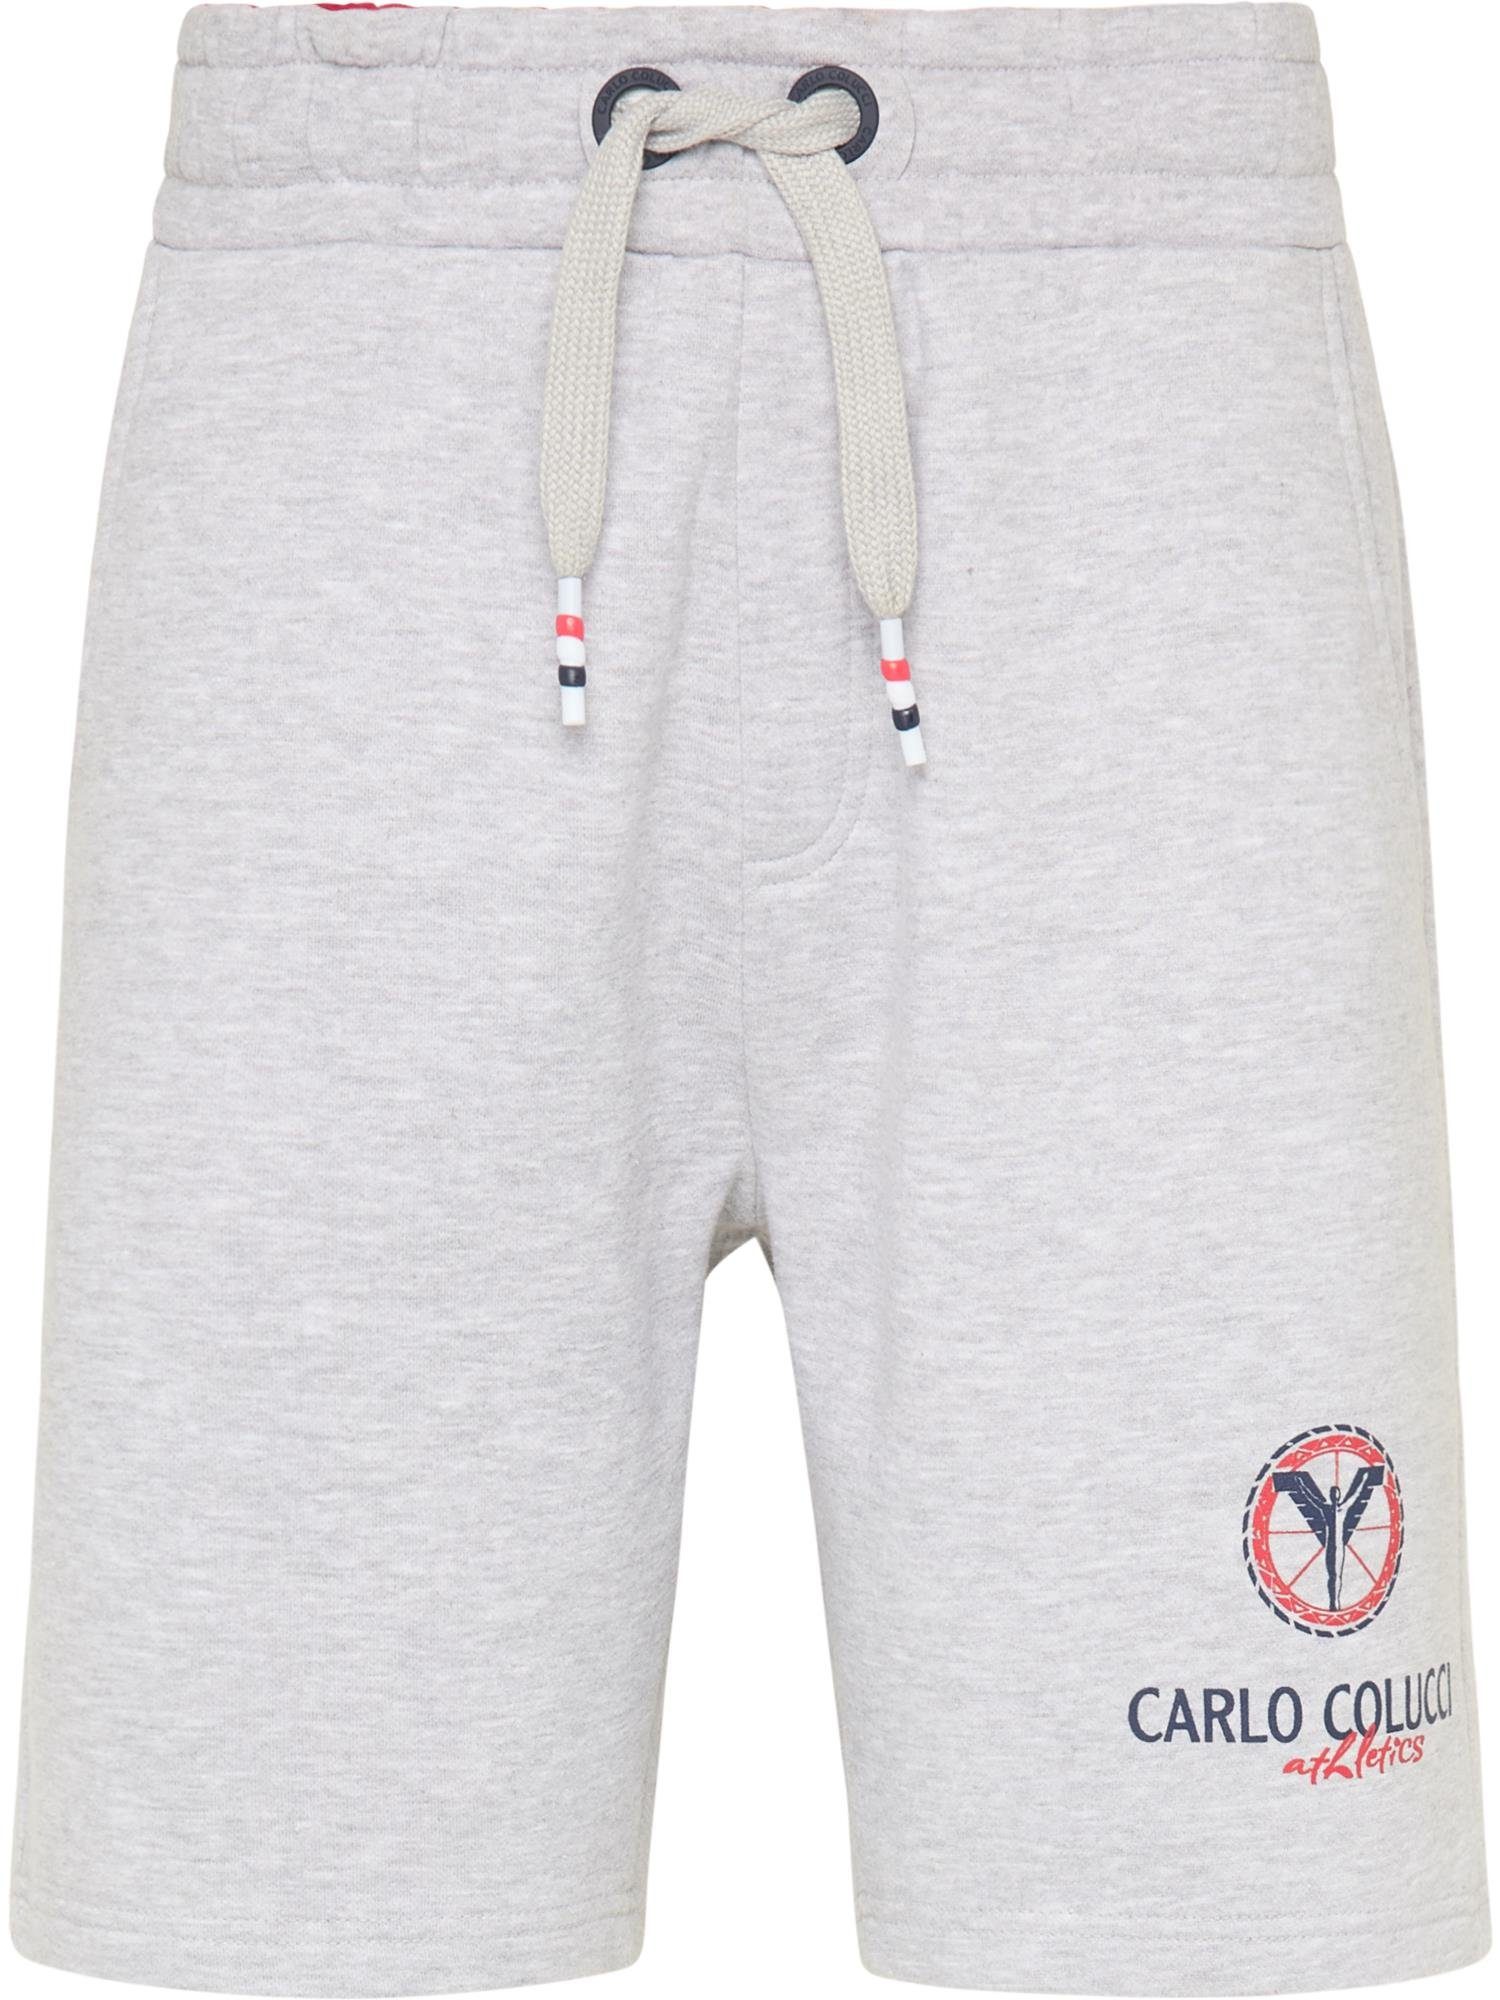 Contarino COLUCCI CARLO Shorts